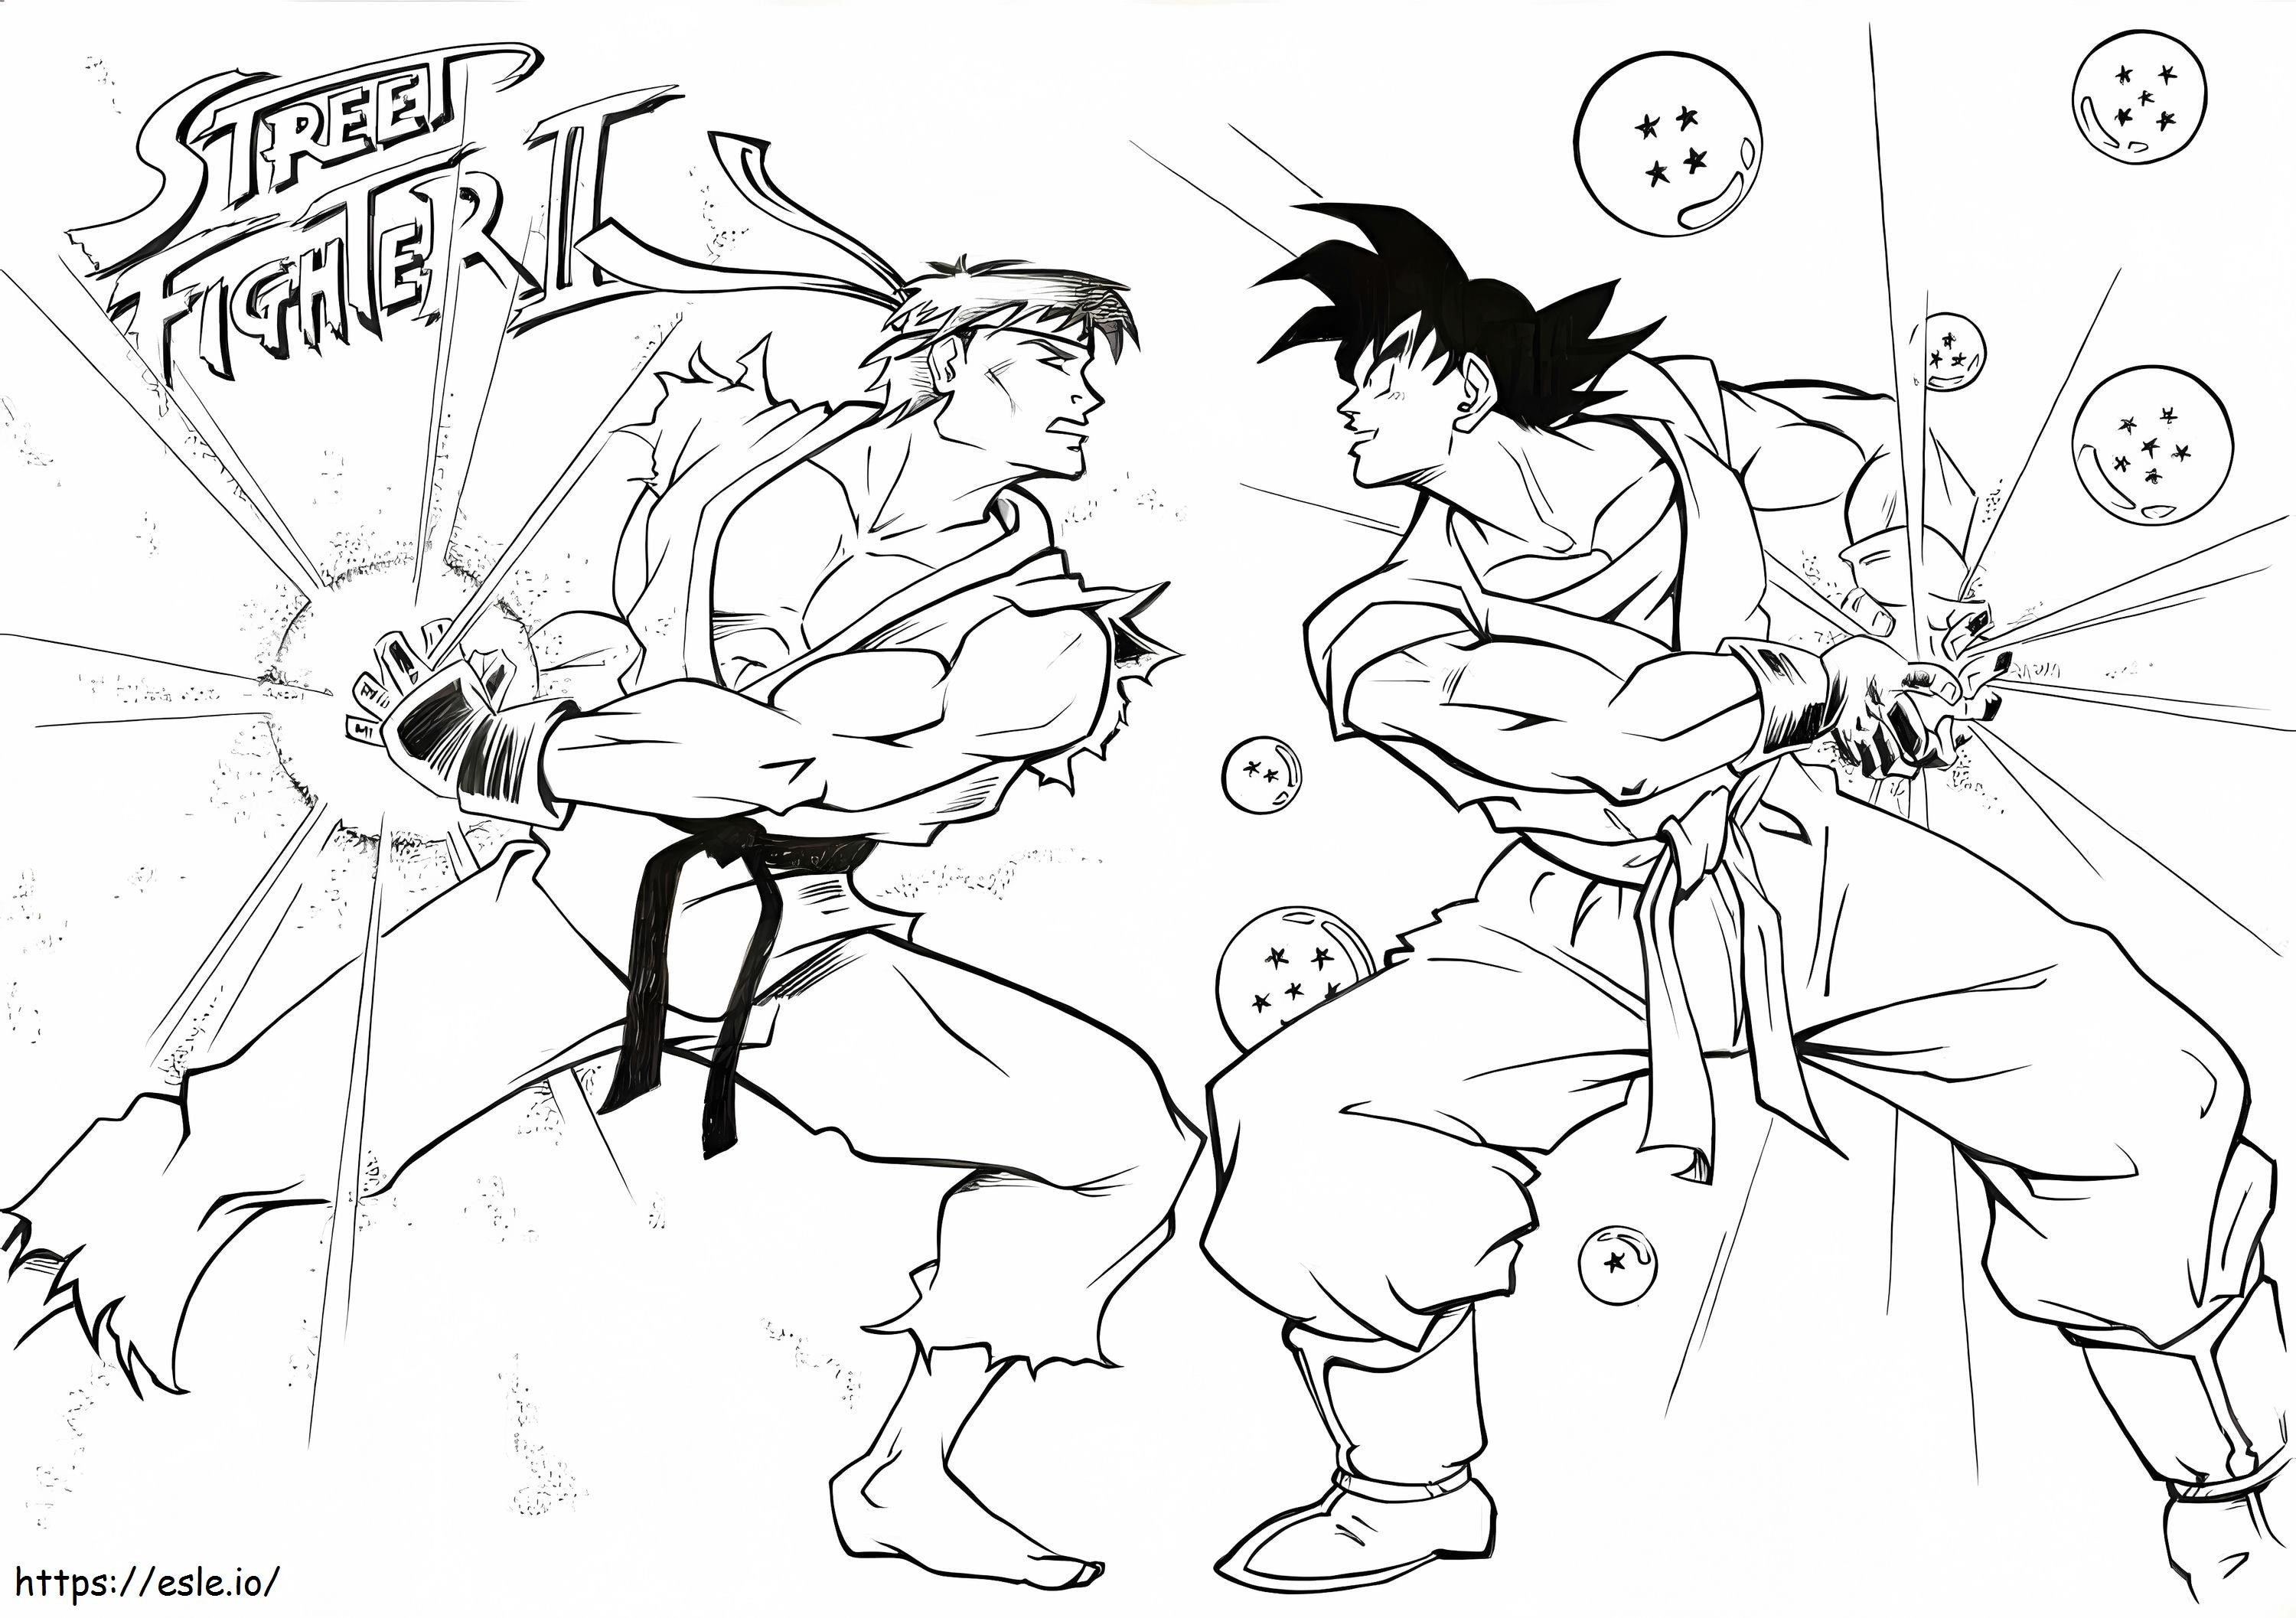 Ryu versus Goku van Street Fighter kleurplaat kleurplaat